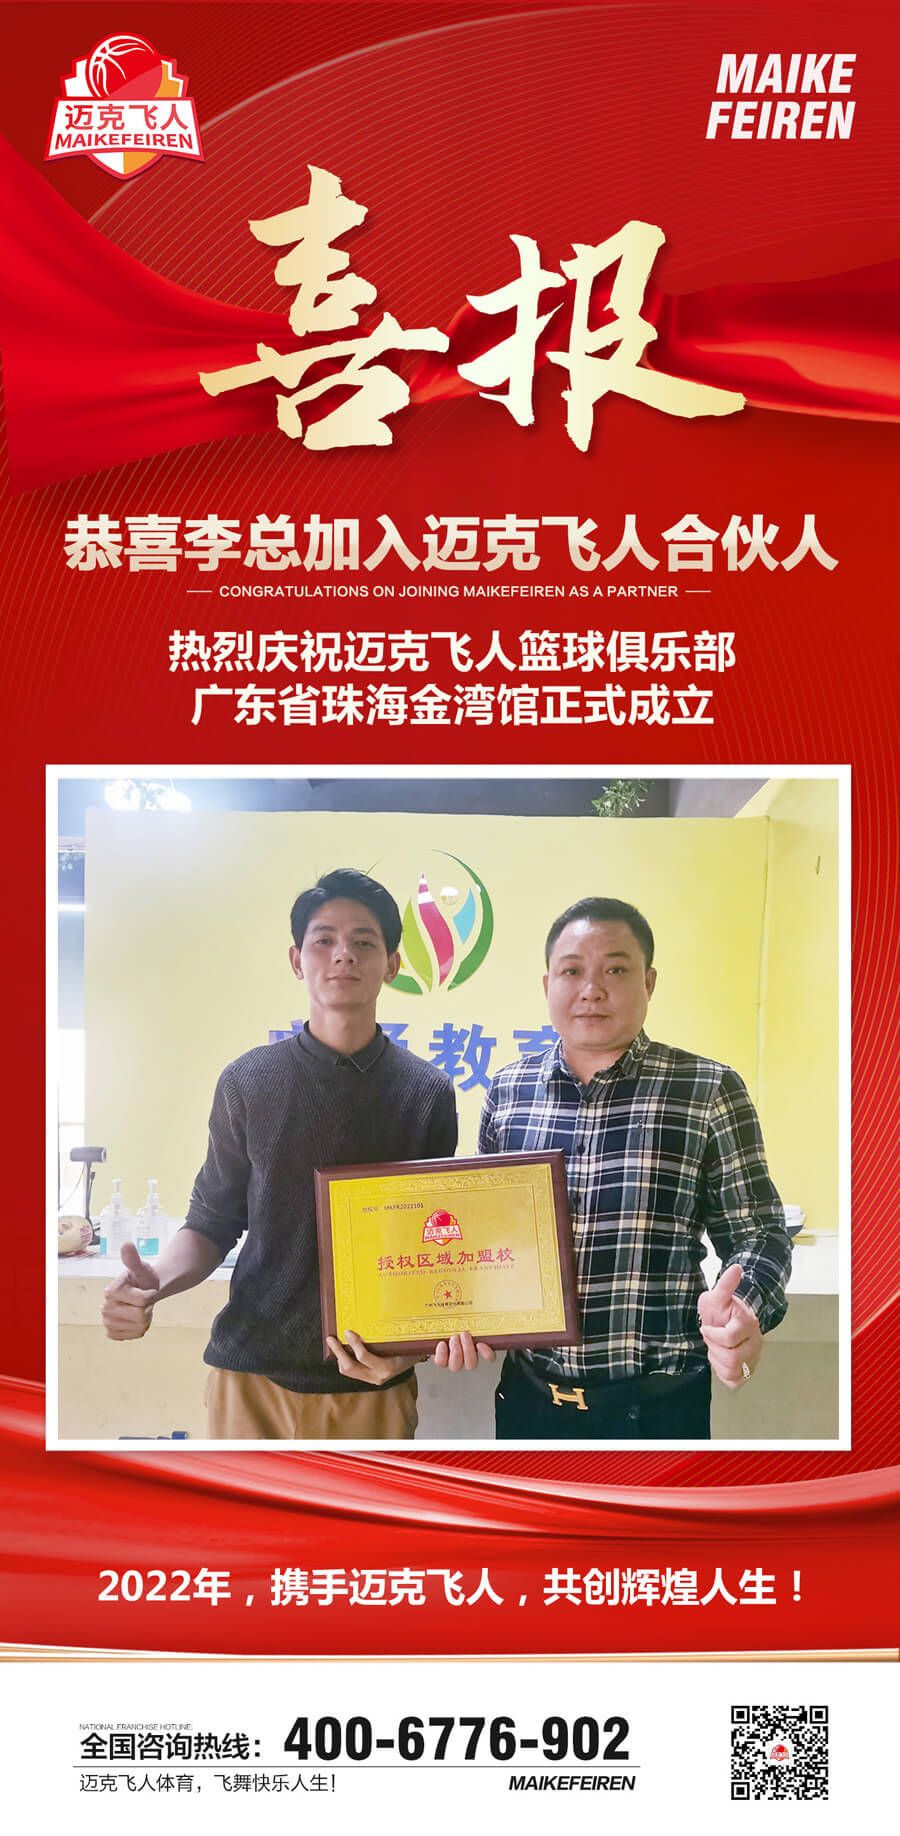 篮球加盟喜报：迈克飞人篮球俱乐部广东珠海金湾区馆正式成立